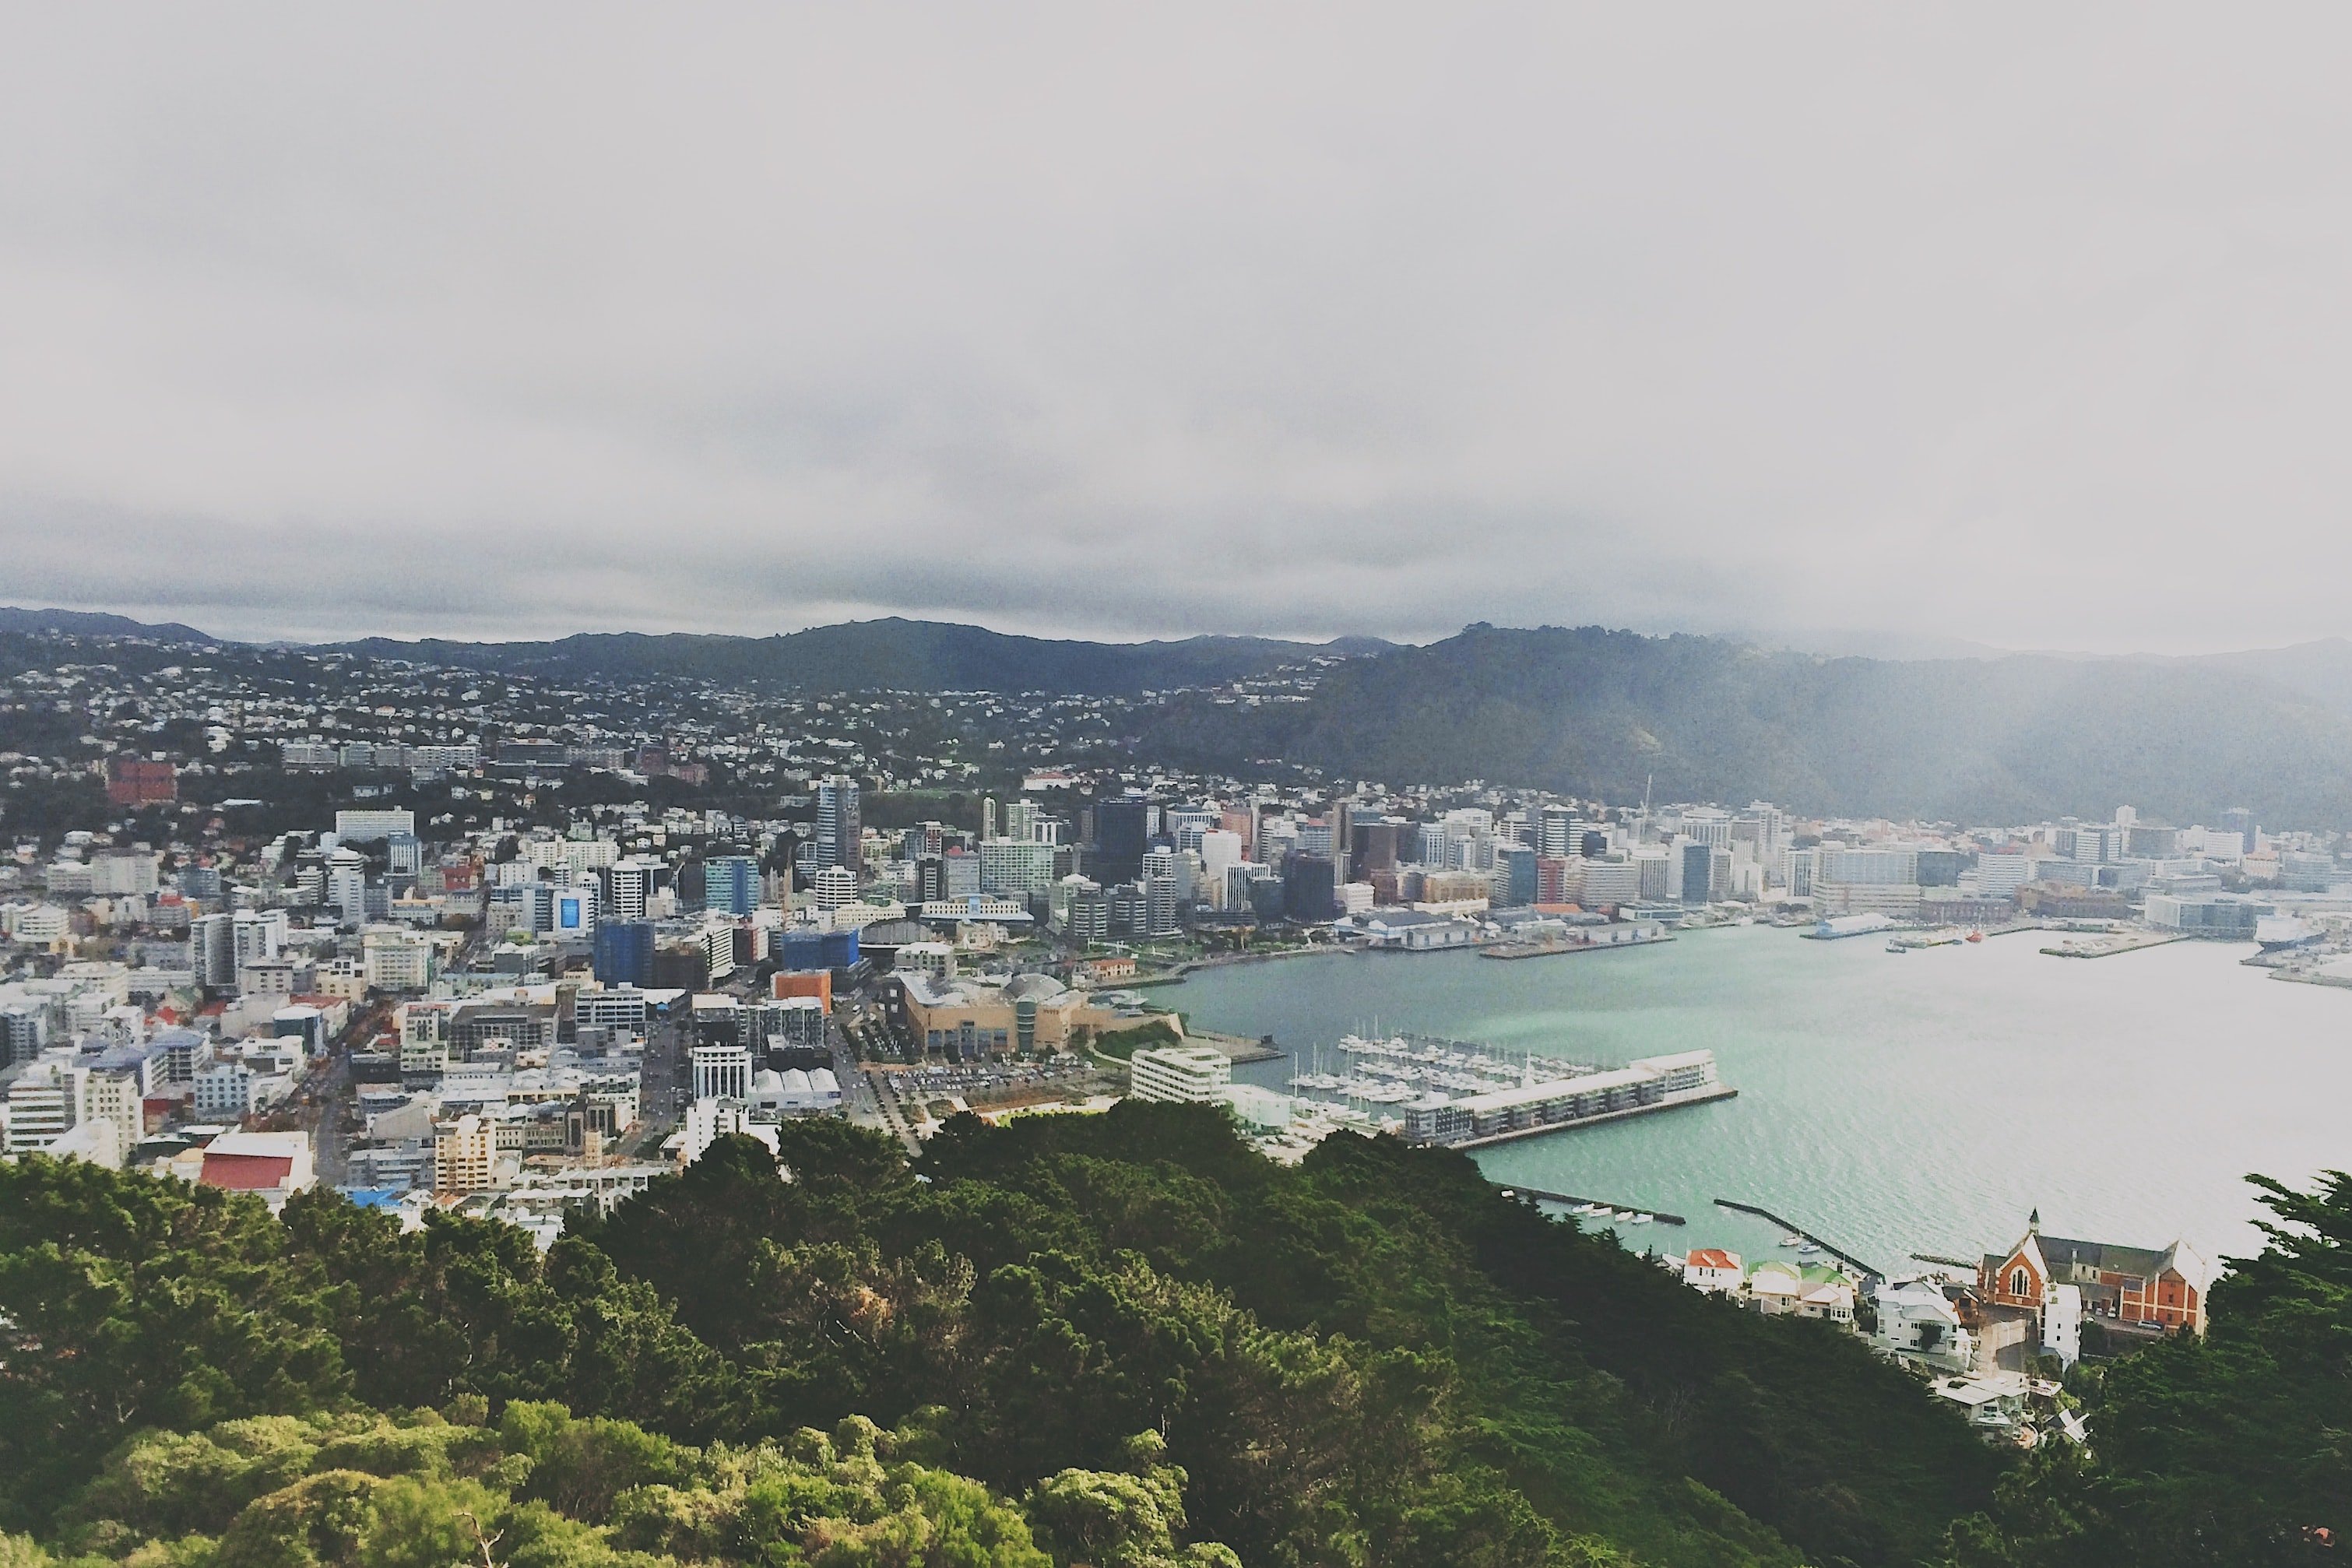 Setmana laboral de 4 dies, la proposta de Nova Zelanda per fomentar el turisme